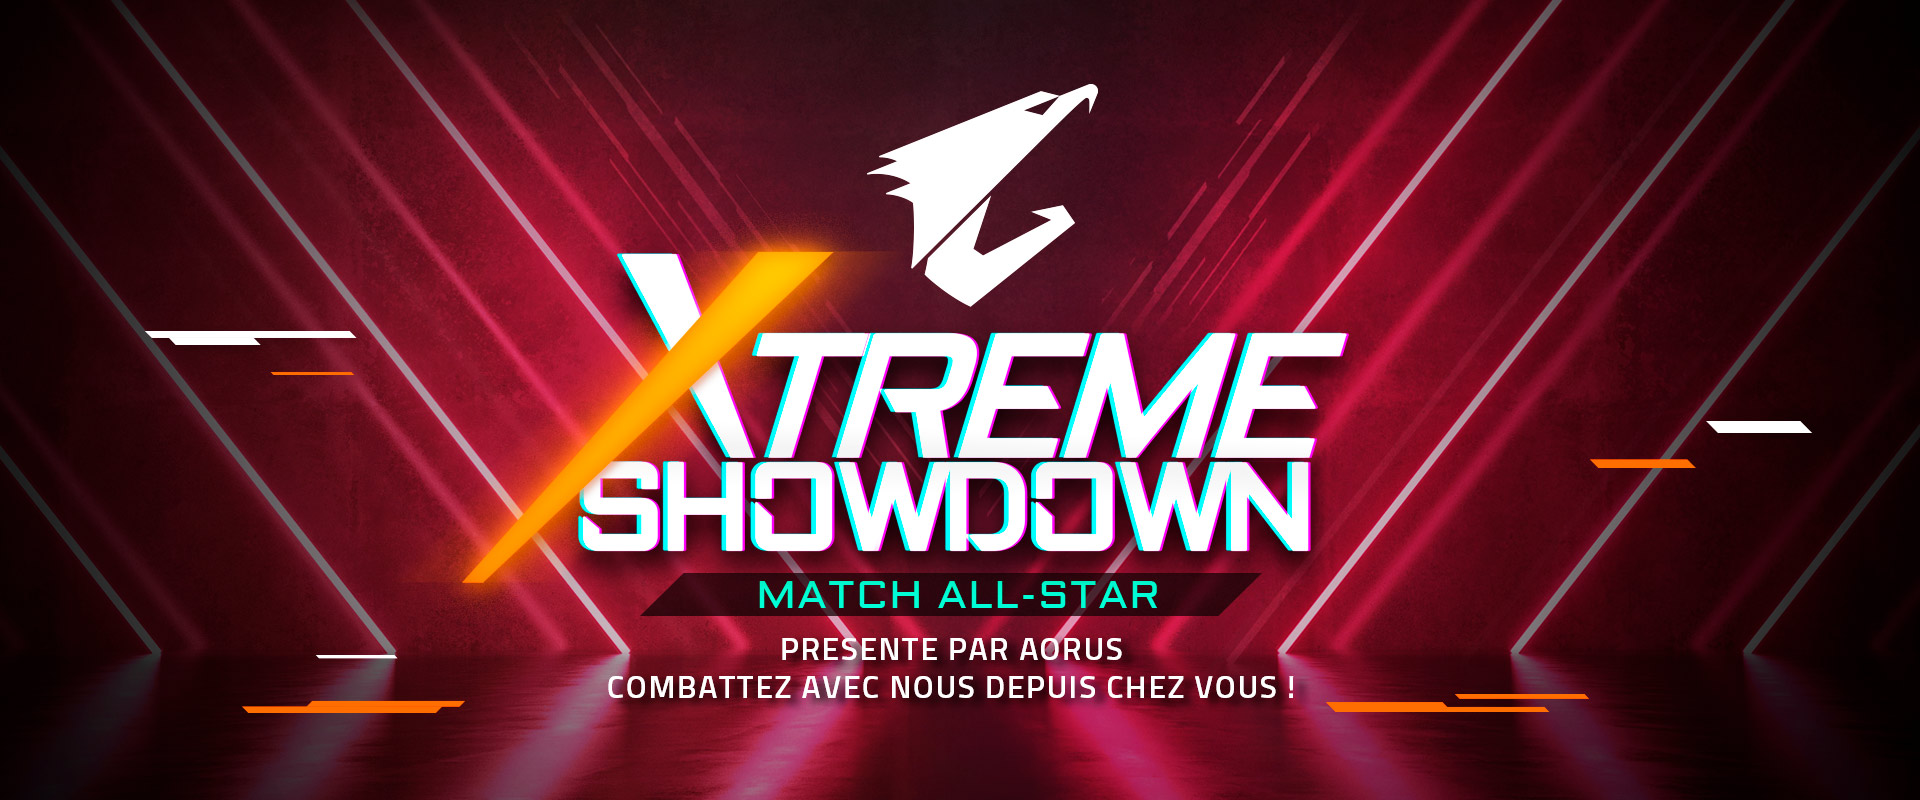 Le match de gala caritatif “Xtreme Showdown”s’annonce palpitant !